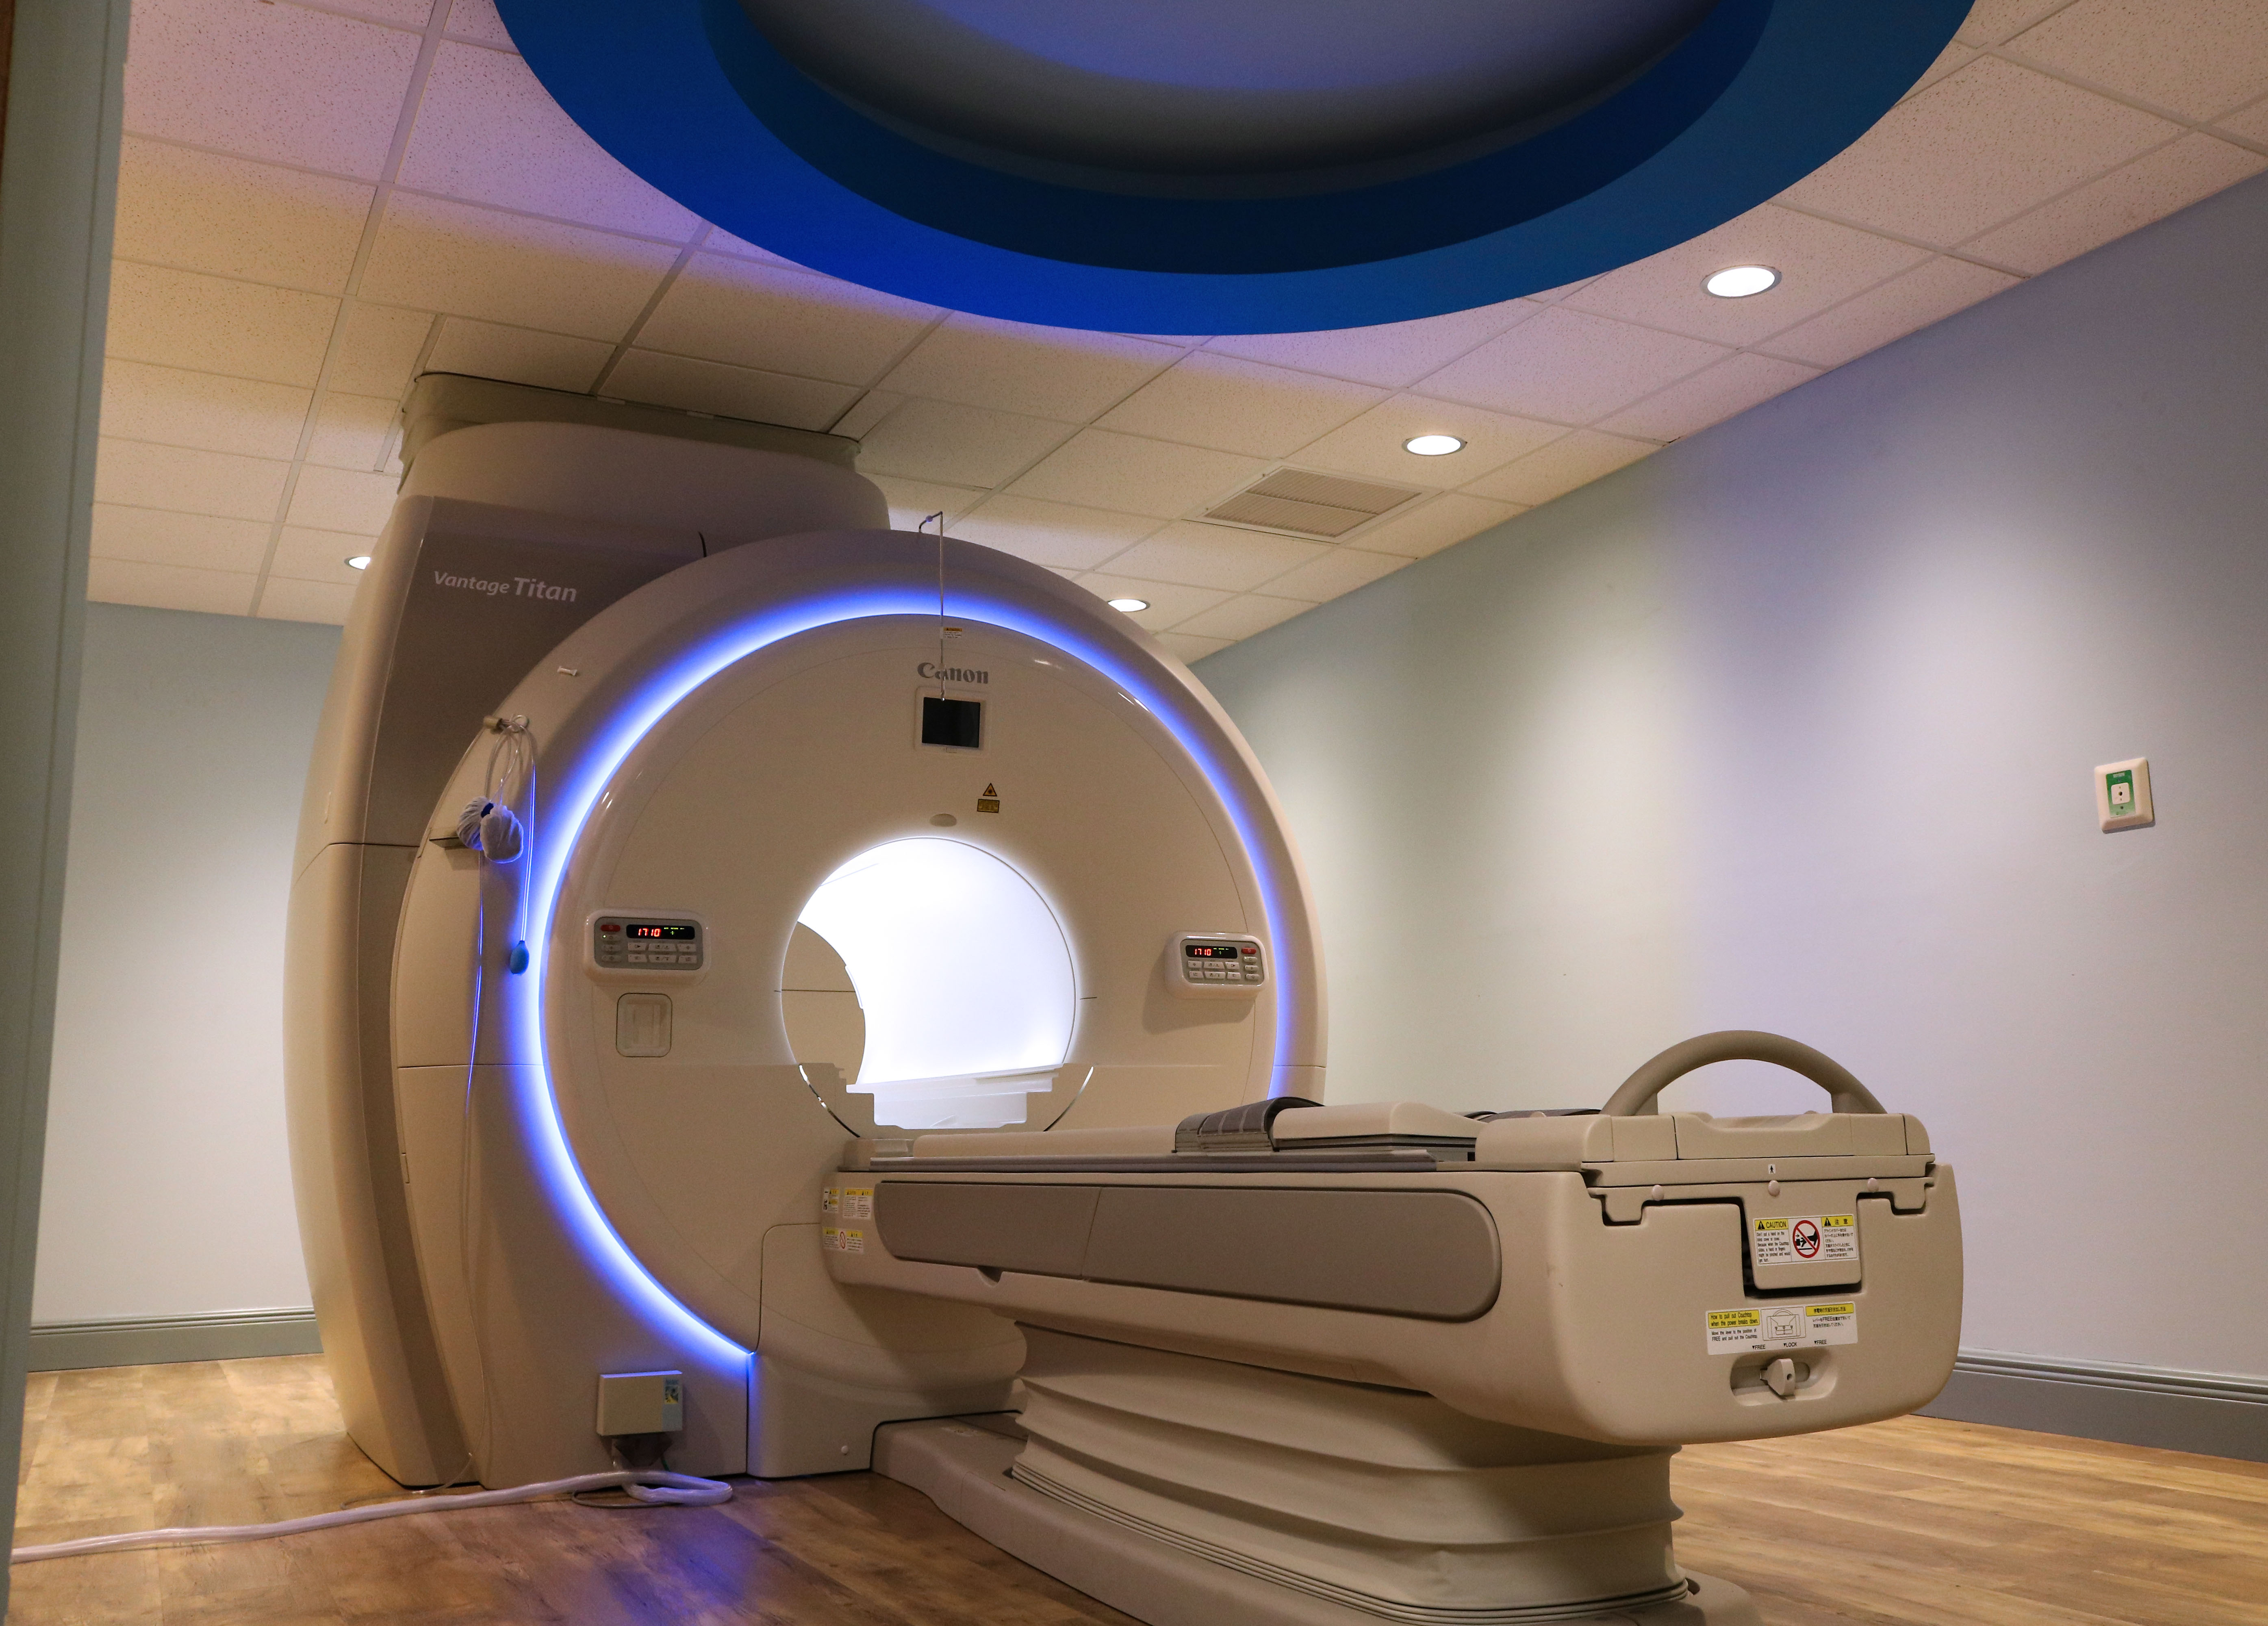 MIT's Wide-bore, Short-bore MRI